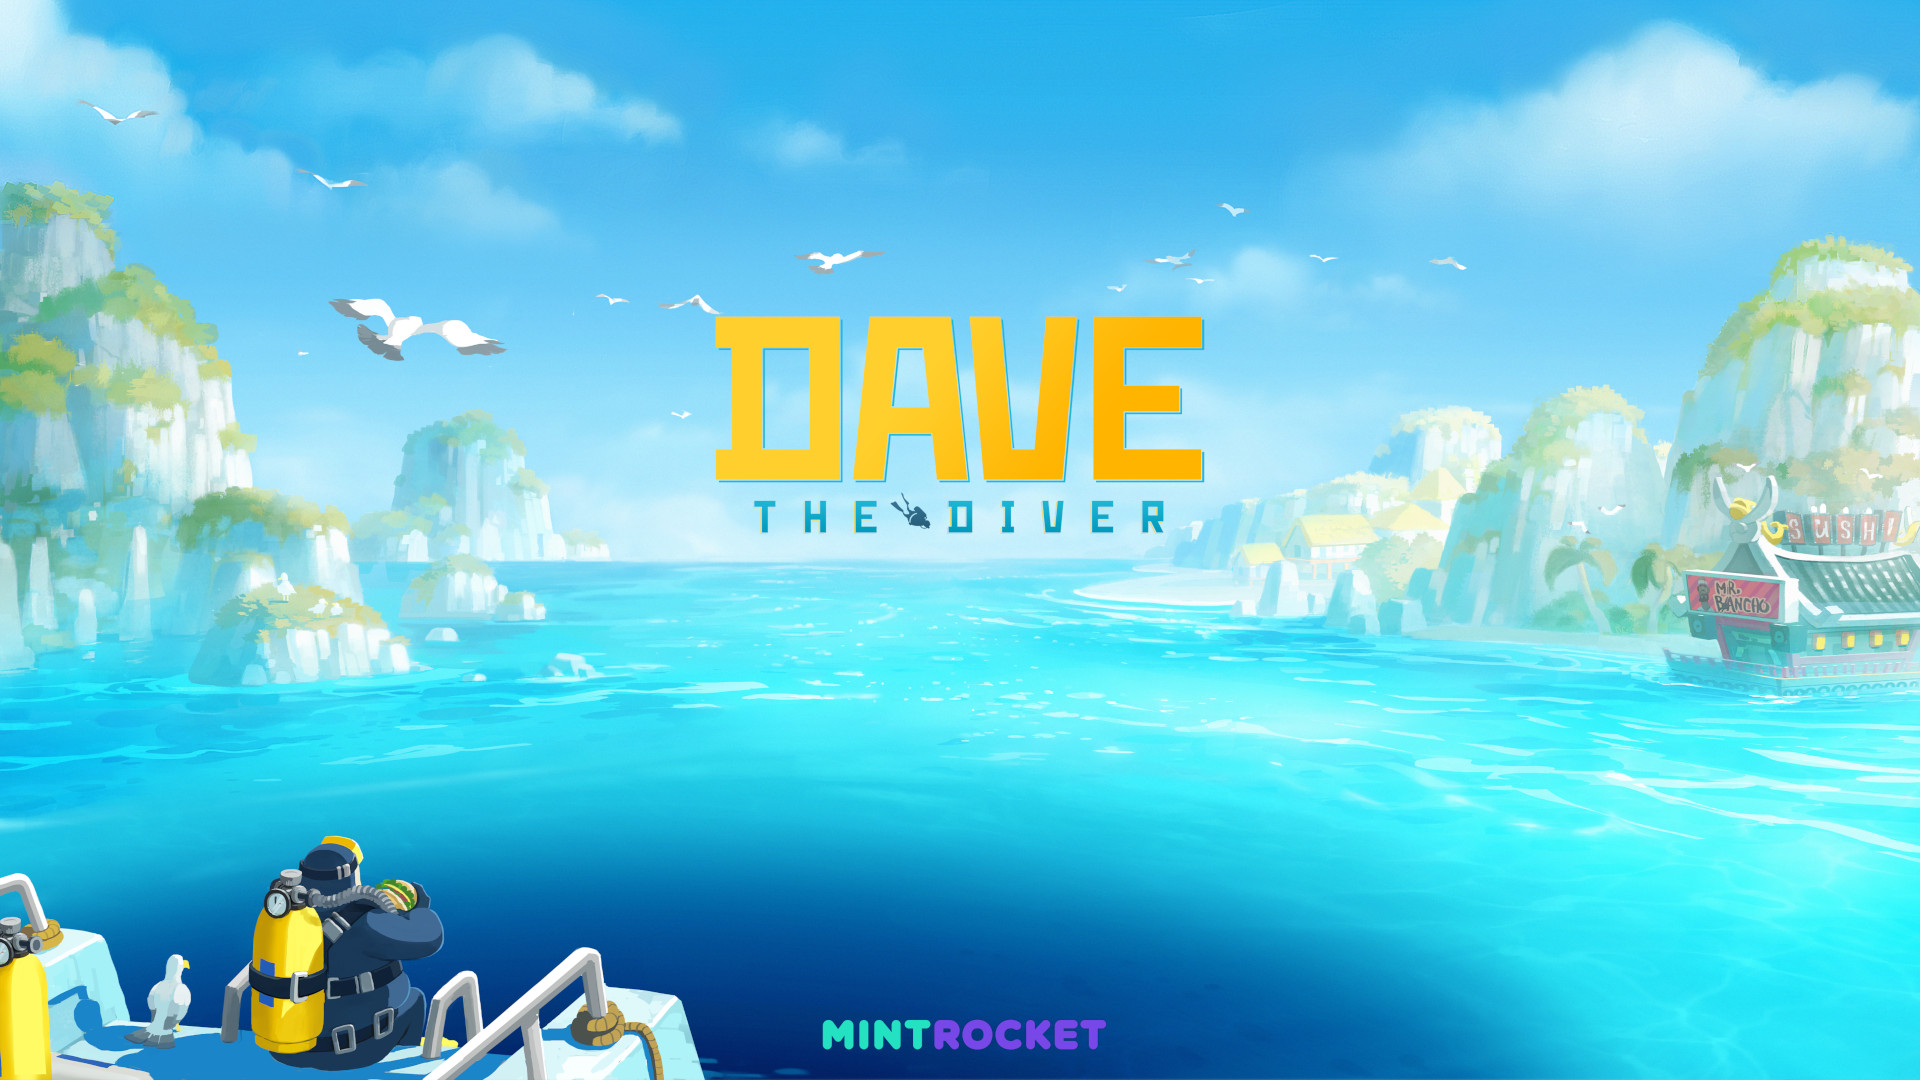 Dave the Diver te leva para exploração dos oceanos